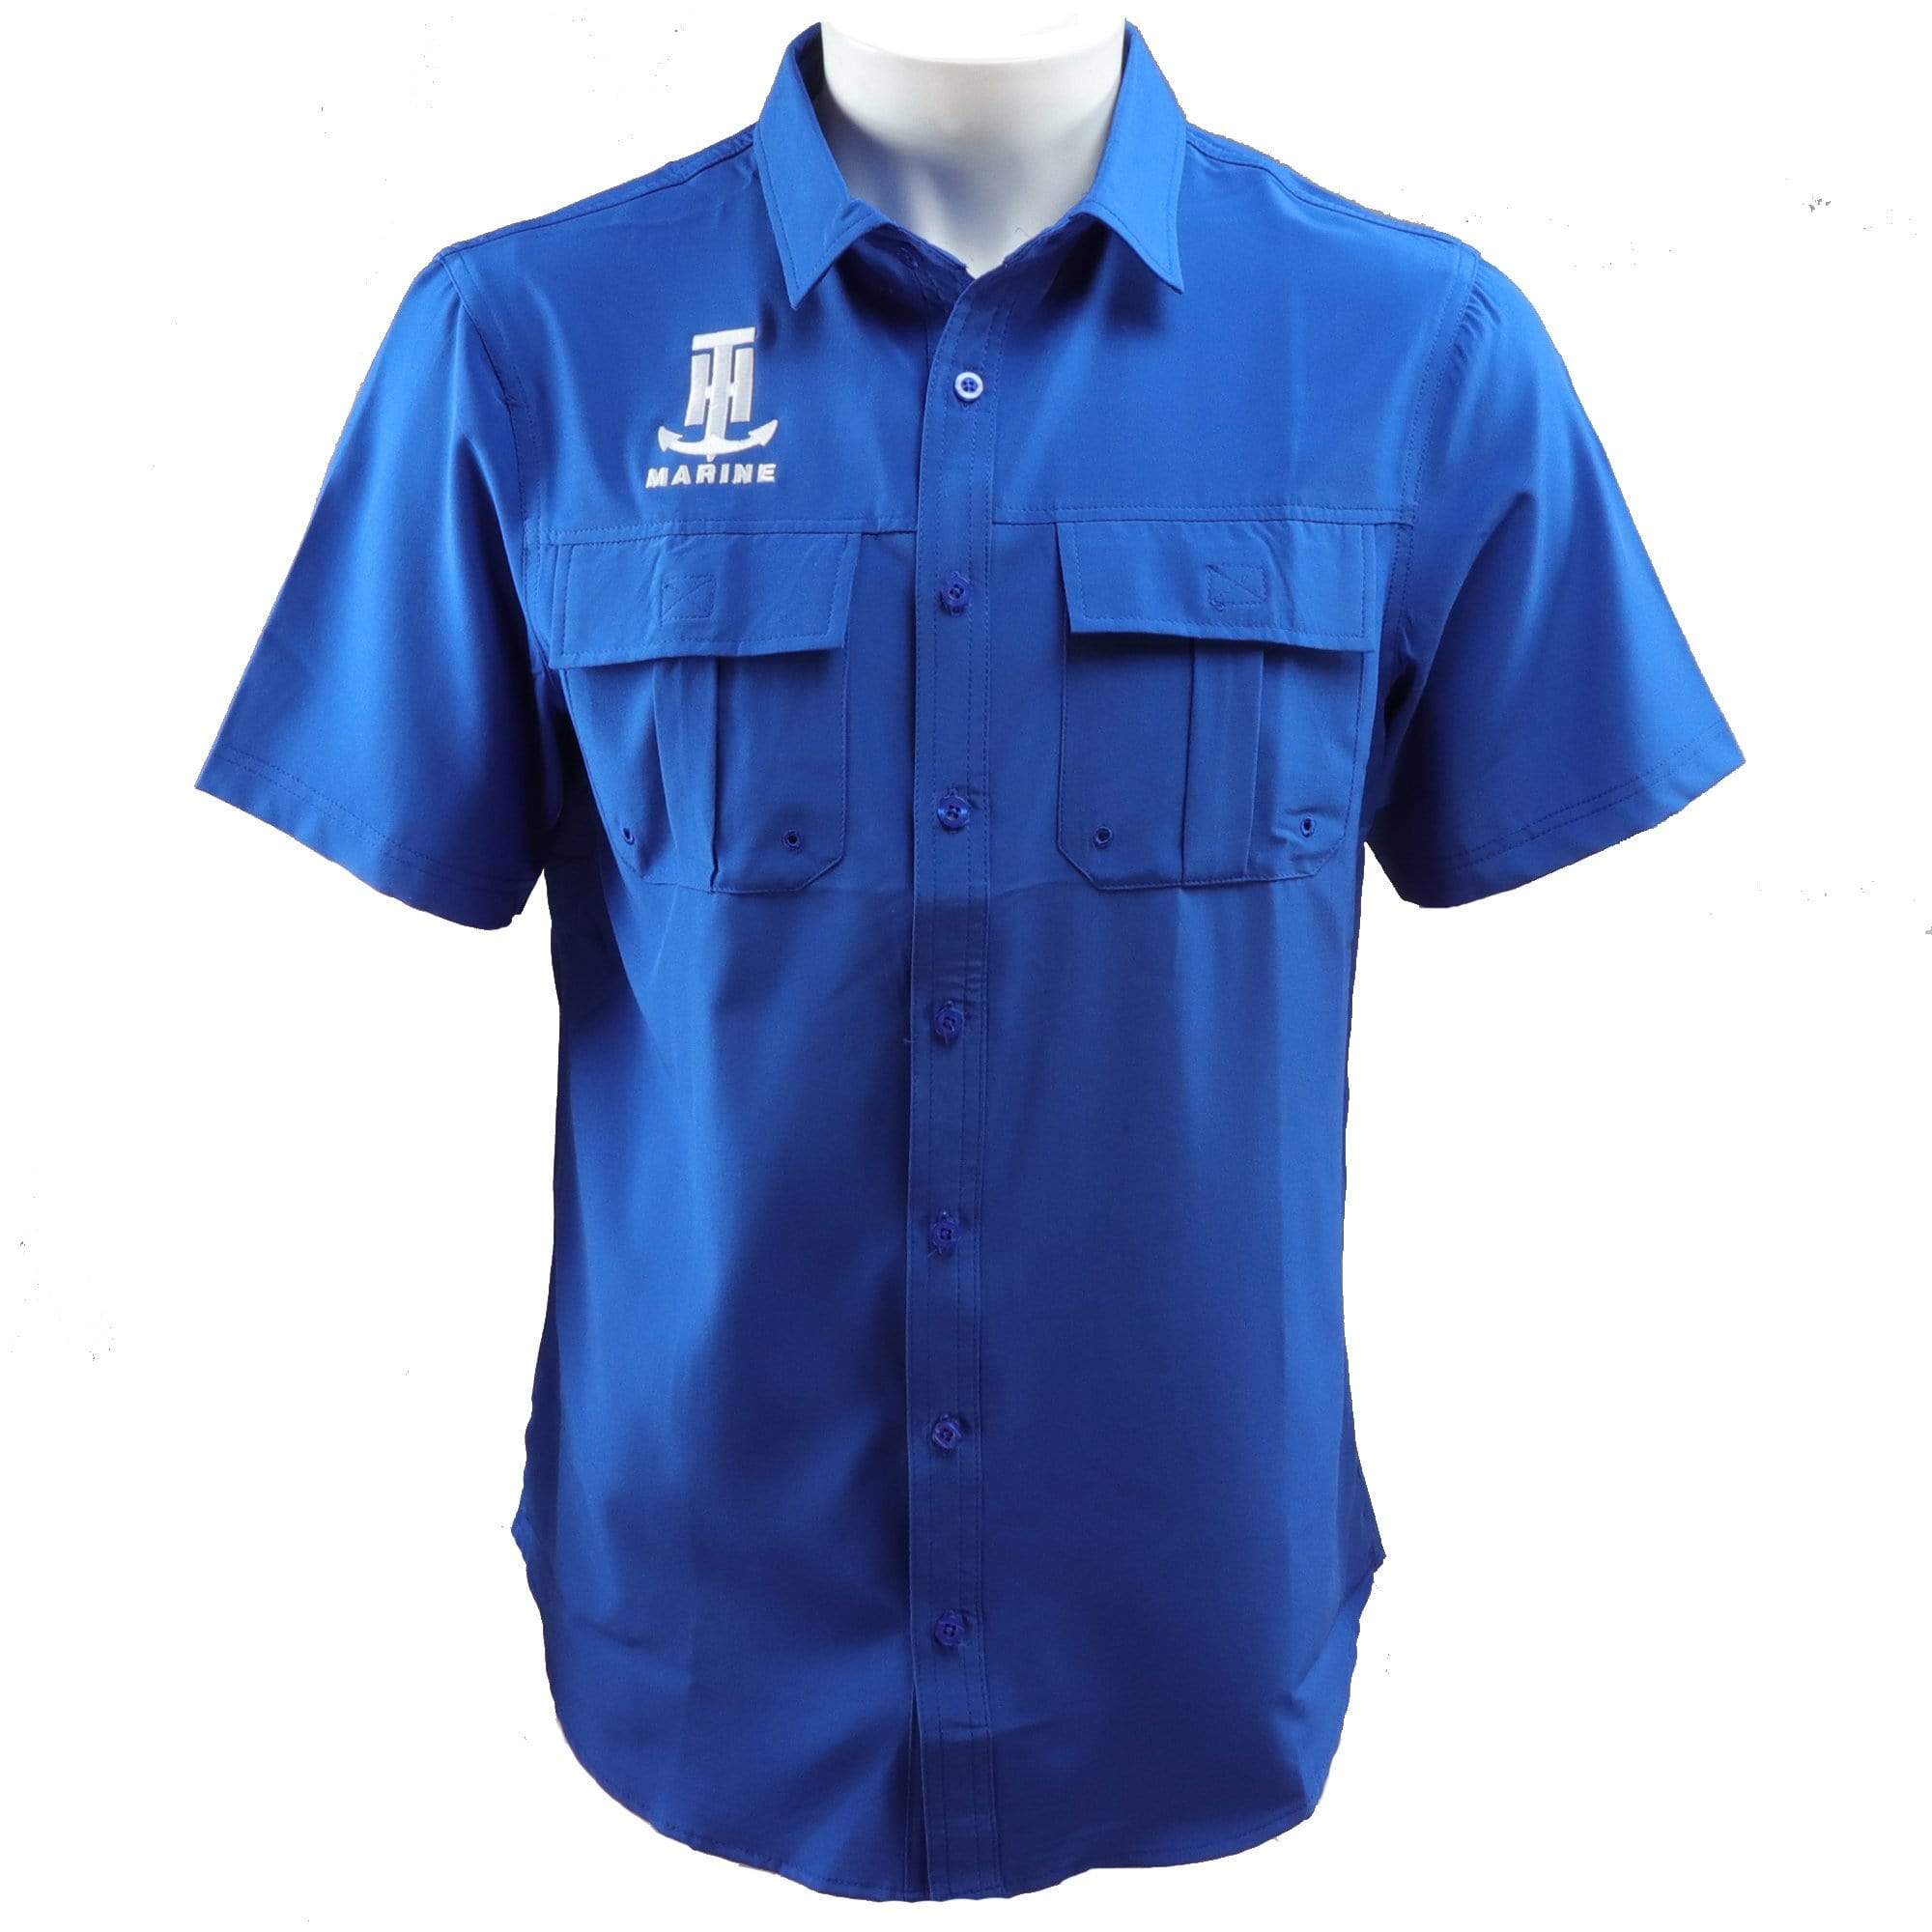 T-H Marine Royal Blue Performance Fishing Shirt Medium